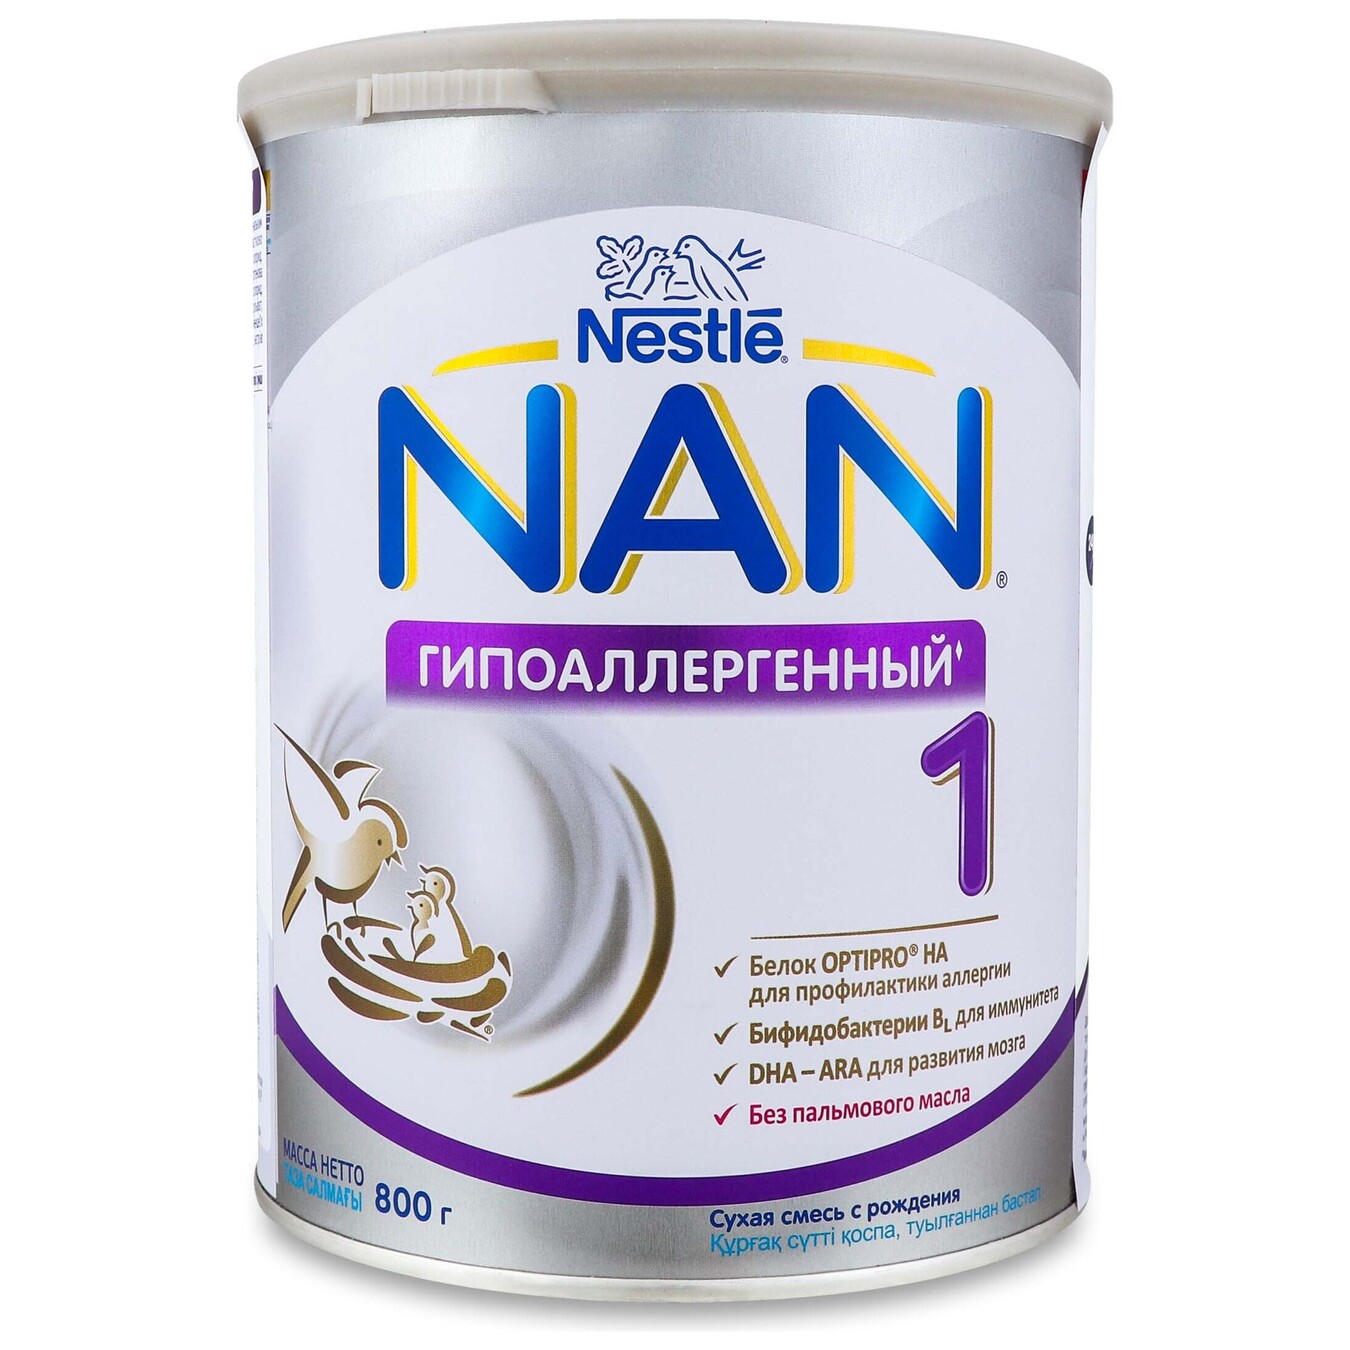 Dry mixture Nan 1 hypoallergenic 800g